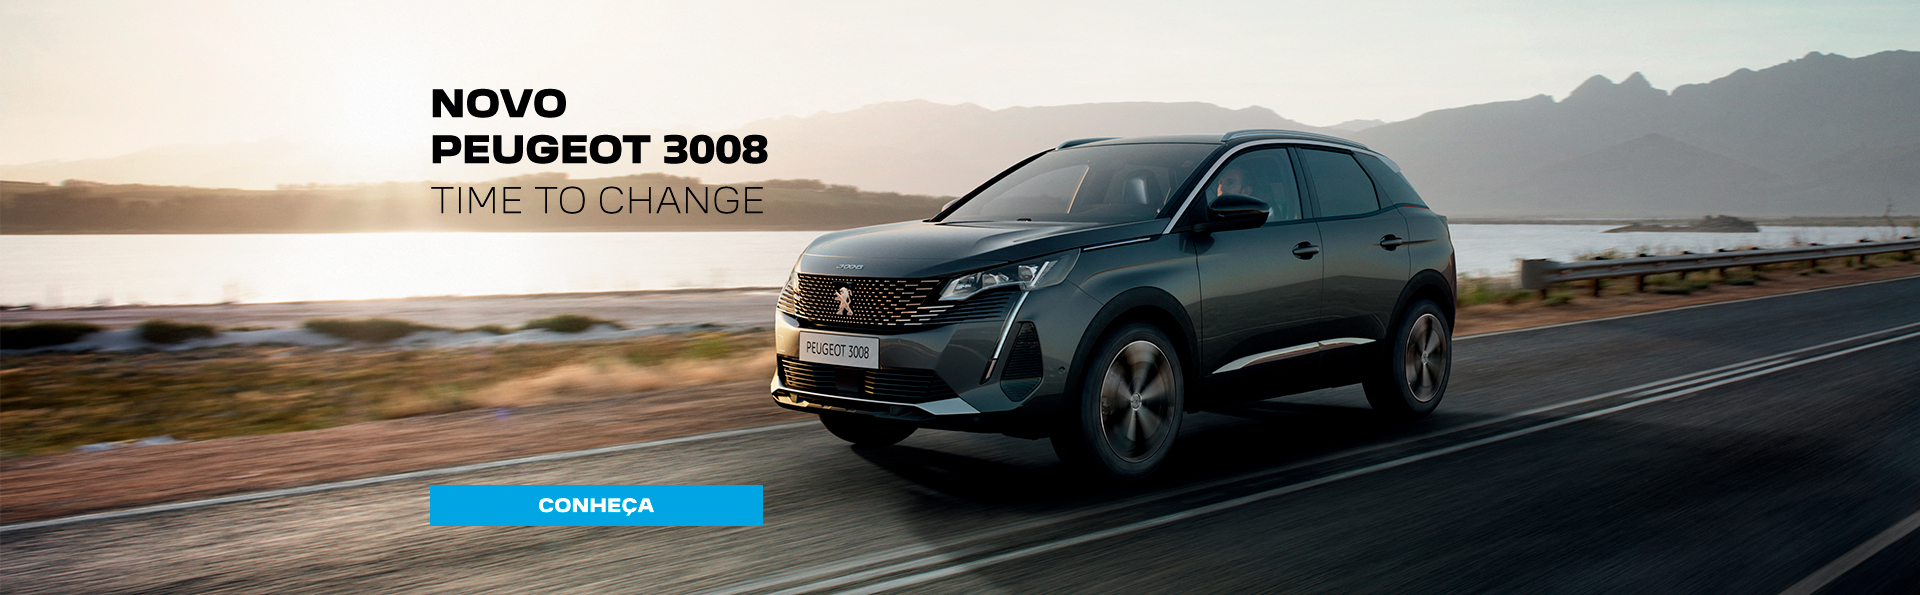 Conheça o Novo Peugeot 3008